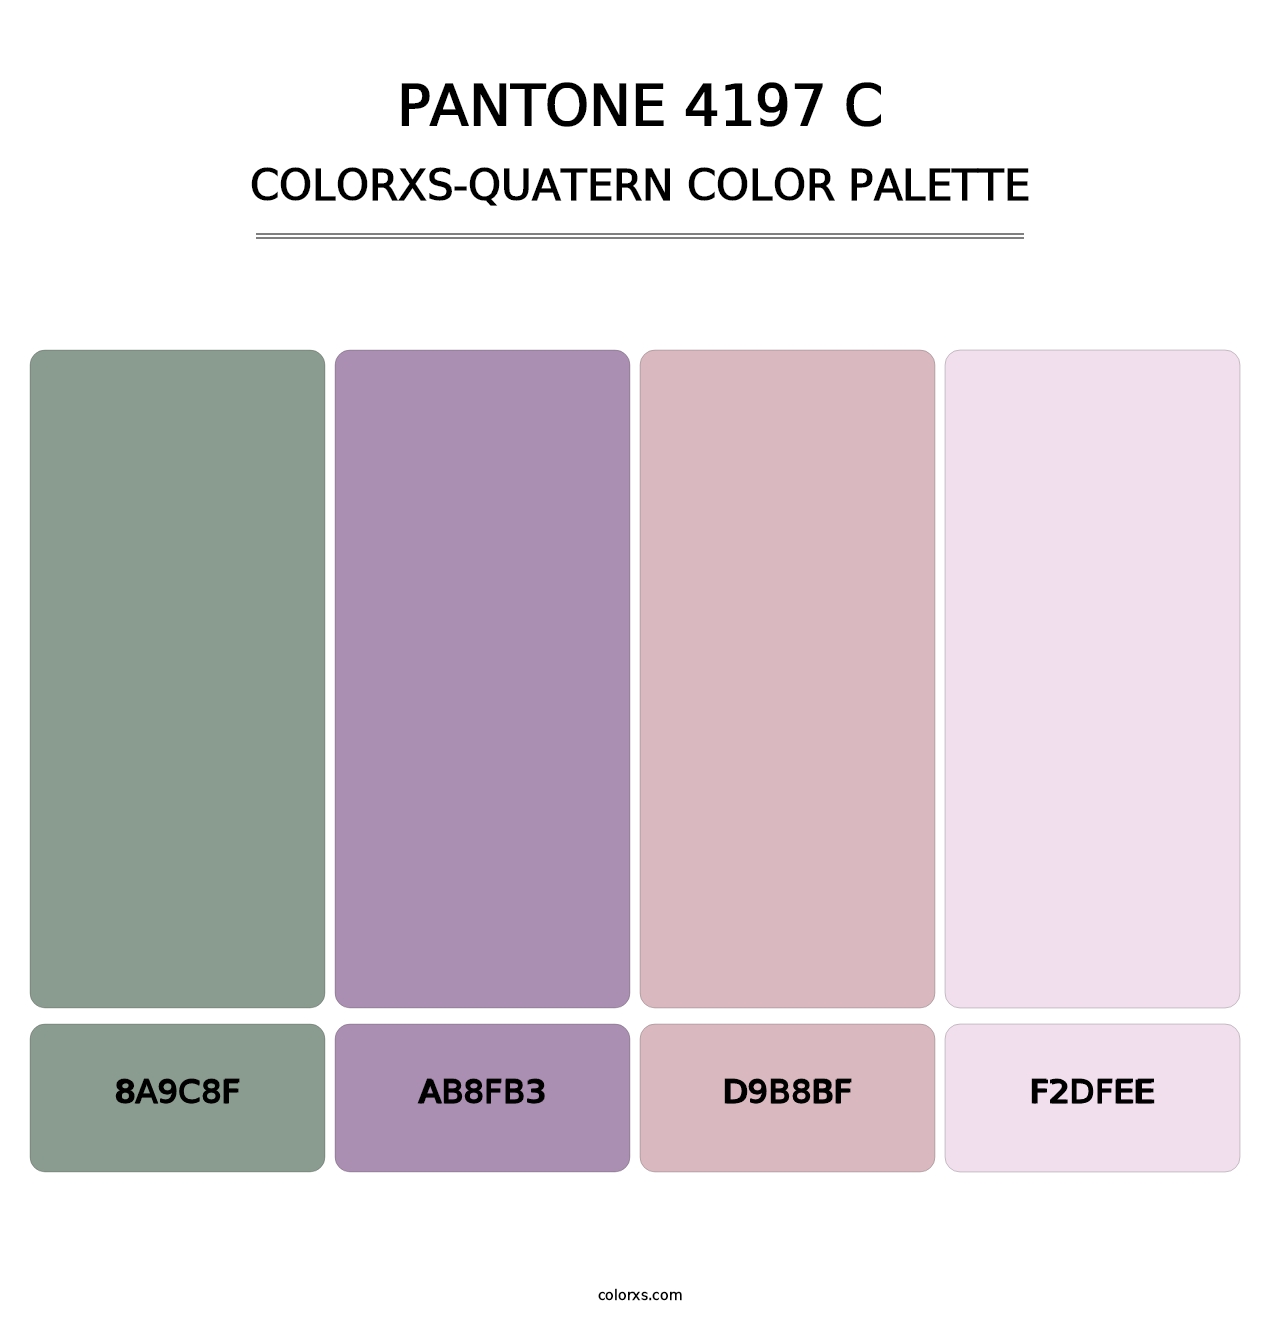 PANTONE 4197 C - Colorxs Quatern Palette